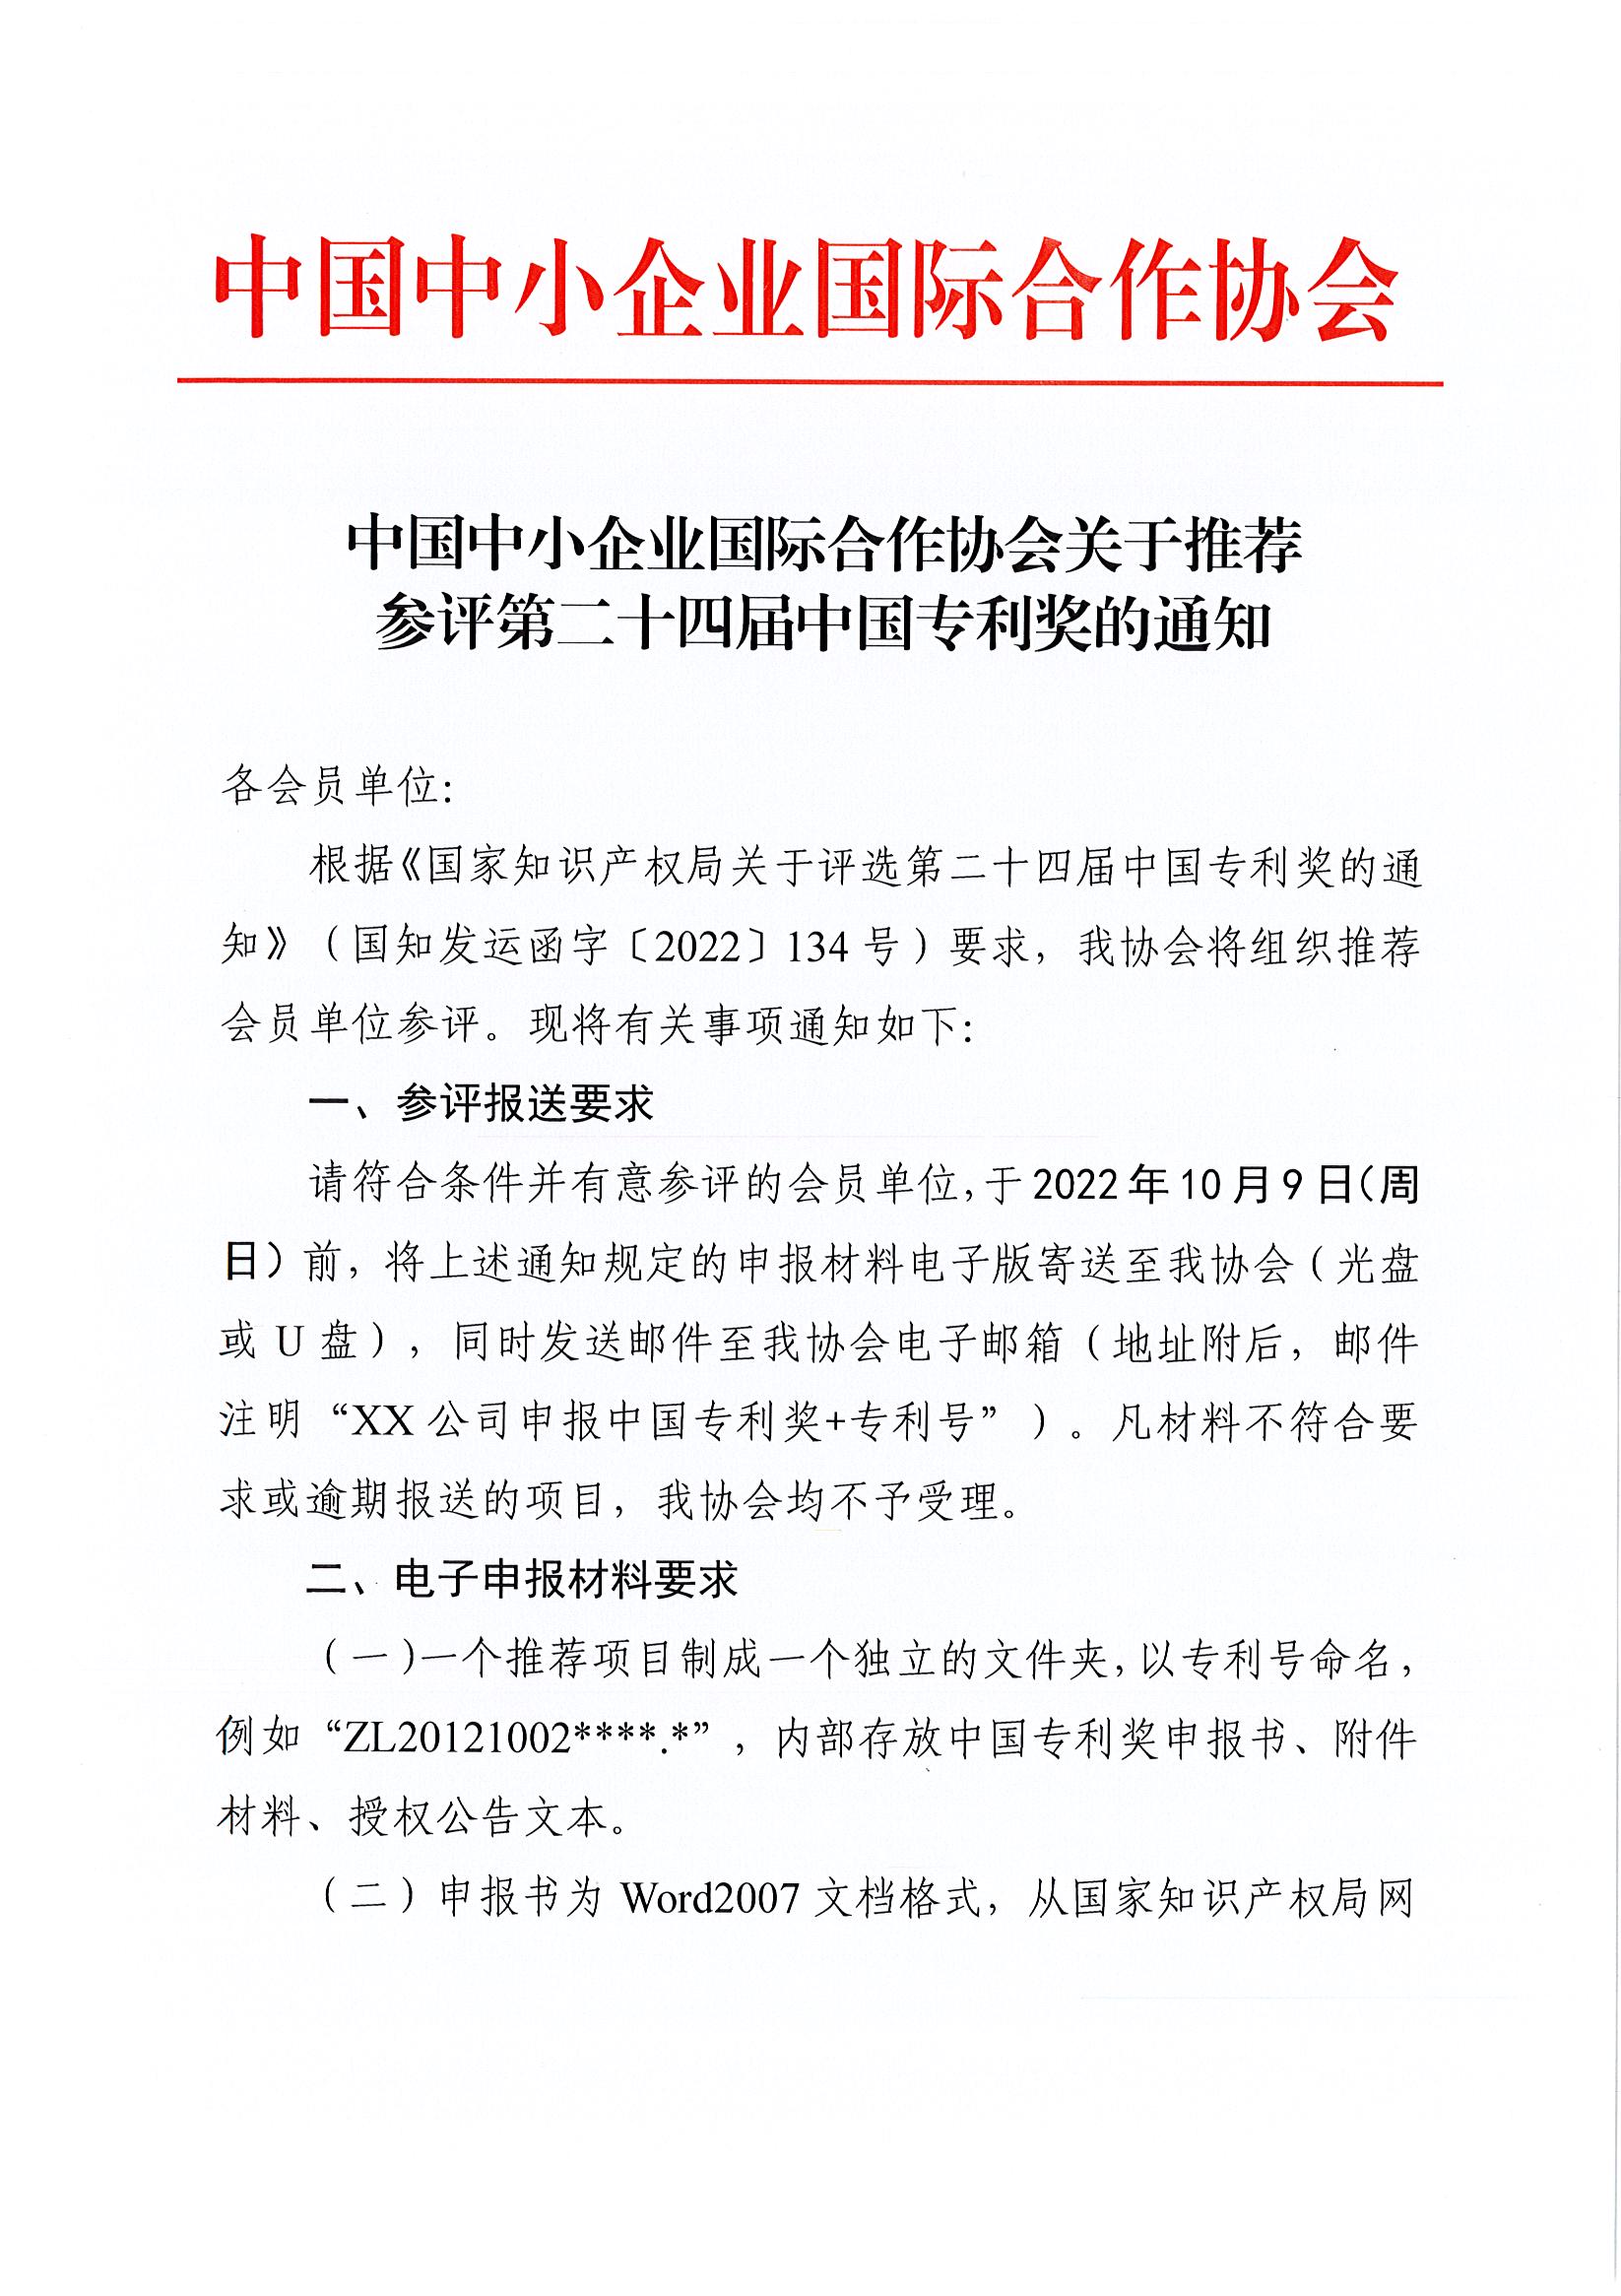 中国中小企业国际合作协会关于推荐参评第二十四届中国专利奖的通知_页面_1.jpg